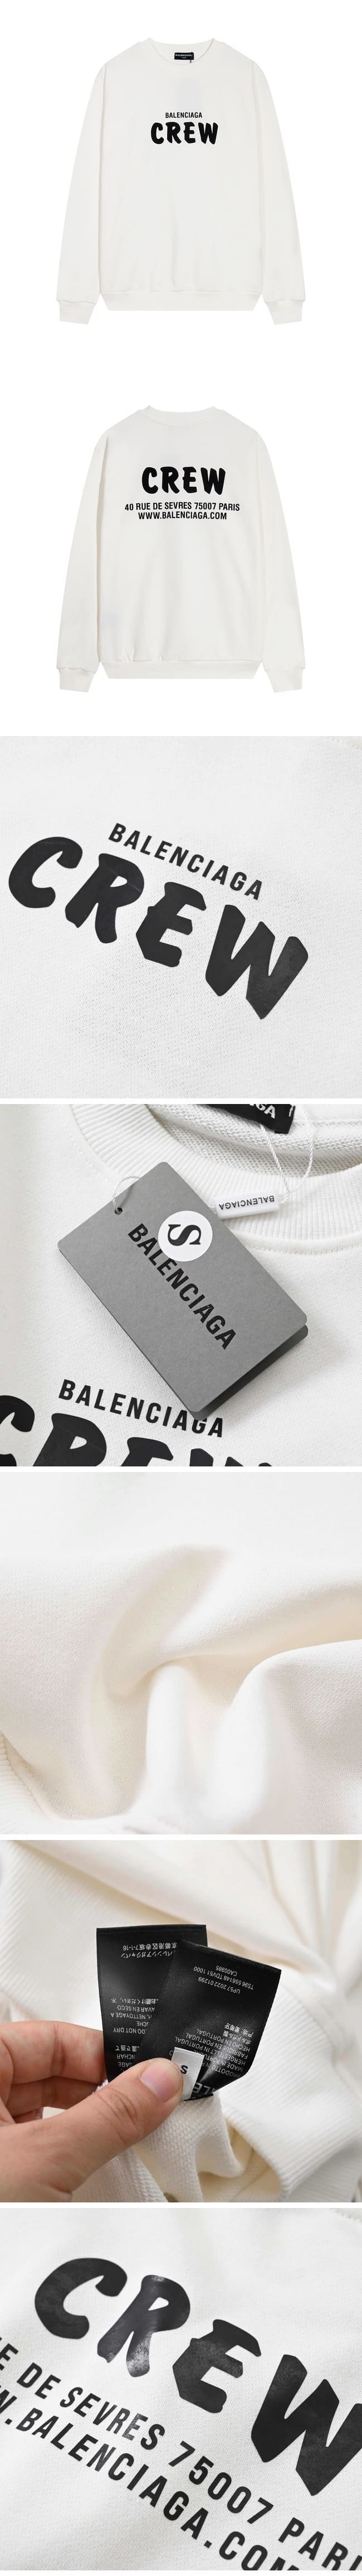 Balenciaga Crew Sweat White バレンシアガ クルー スウェット ホワイト